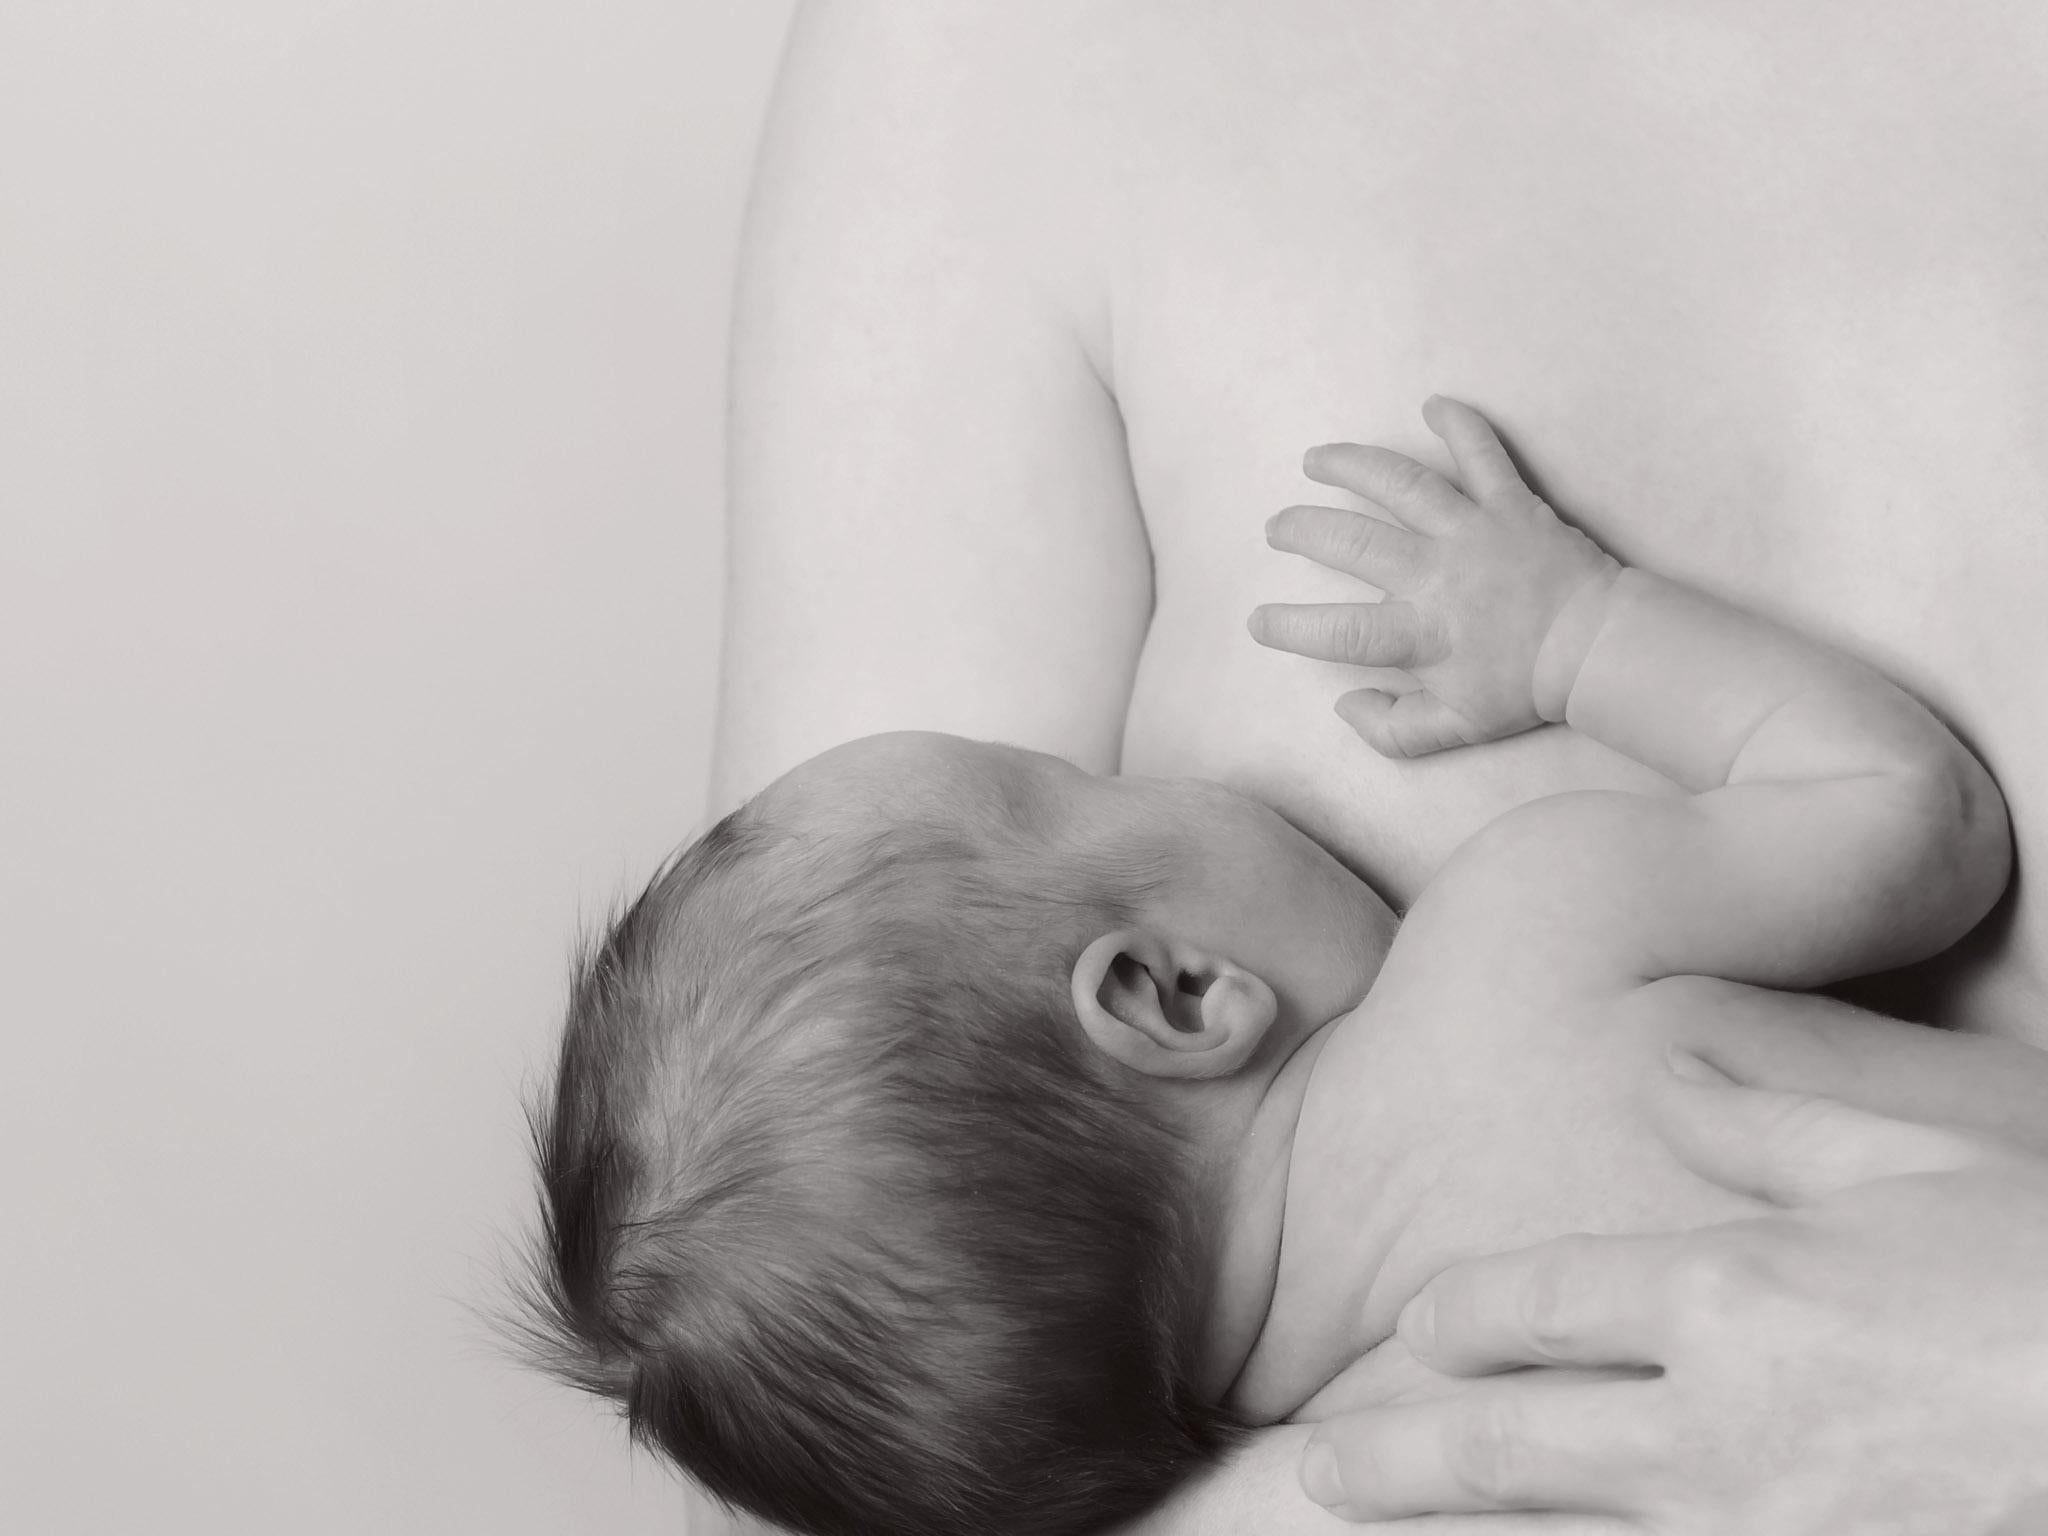 Мужчины кормят грудью ребенка. Заставка дети грудные. Мифы о грудном вскармливании. Вскармливание грудью детей 10 лет. Женщина с грудным ребенком.